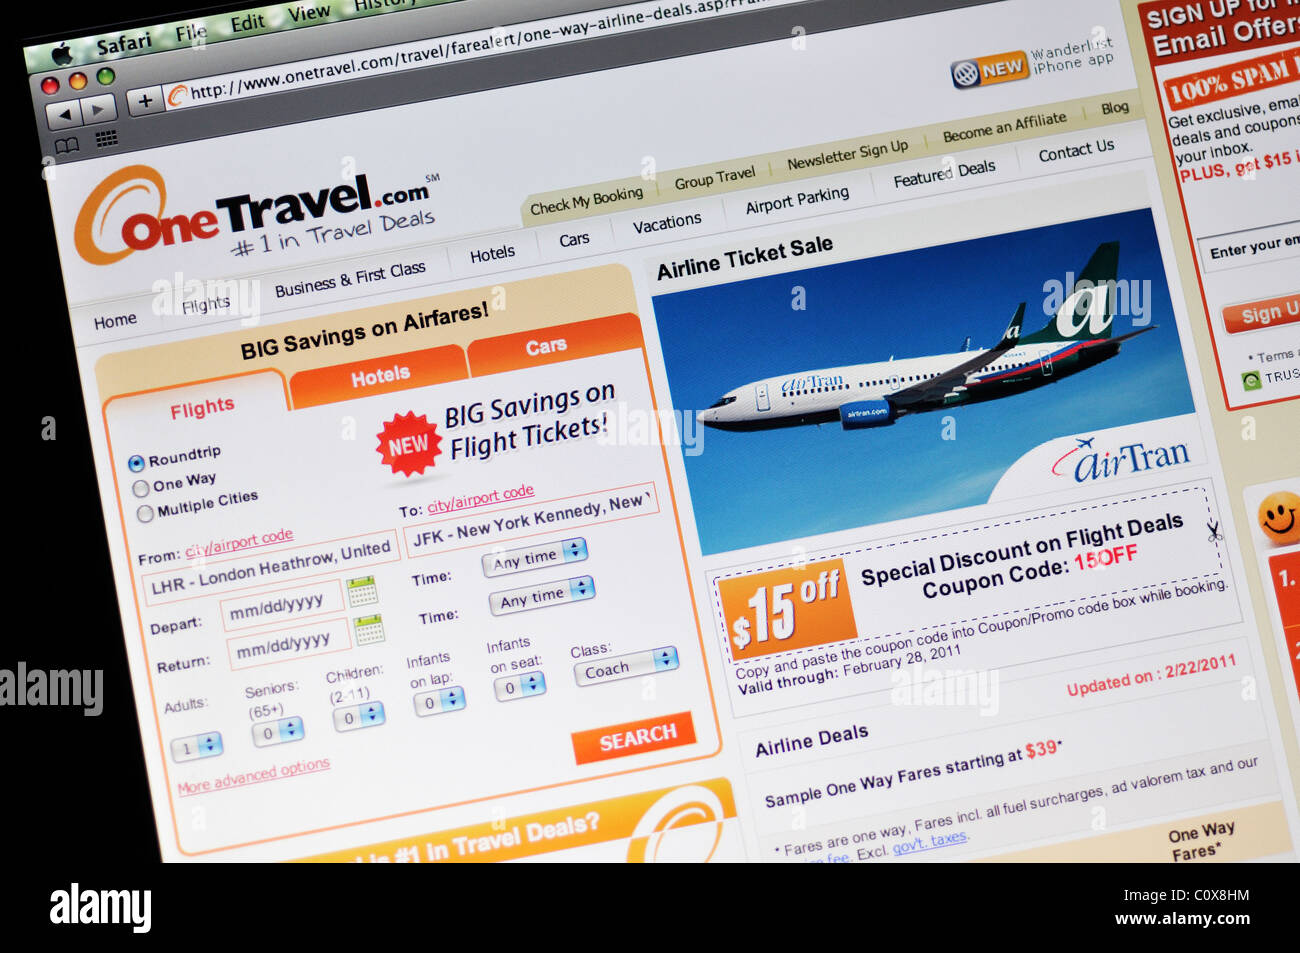 One Travel website Stock Photo